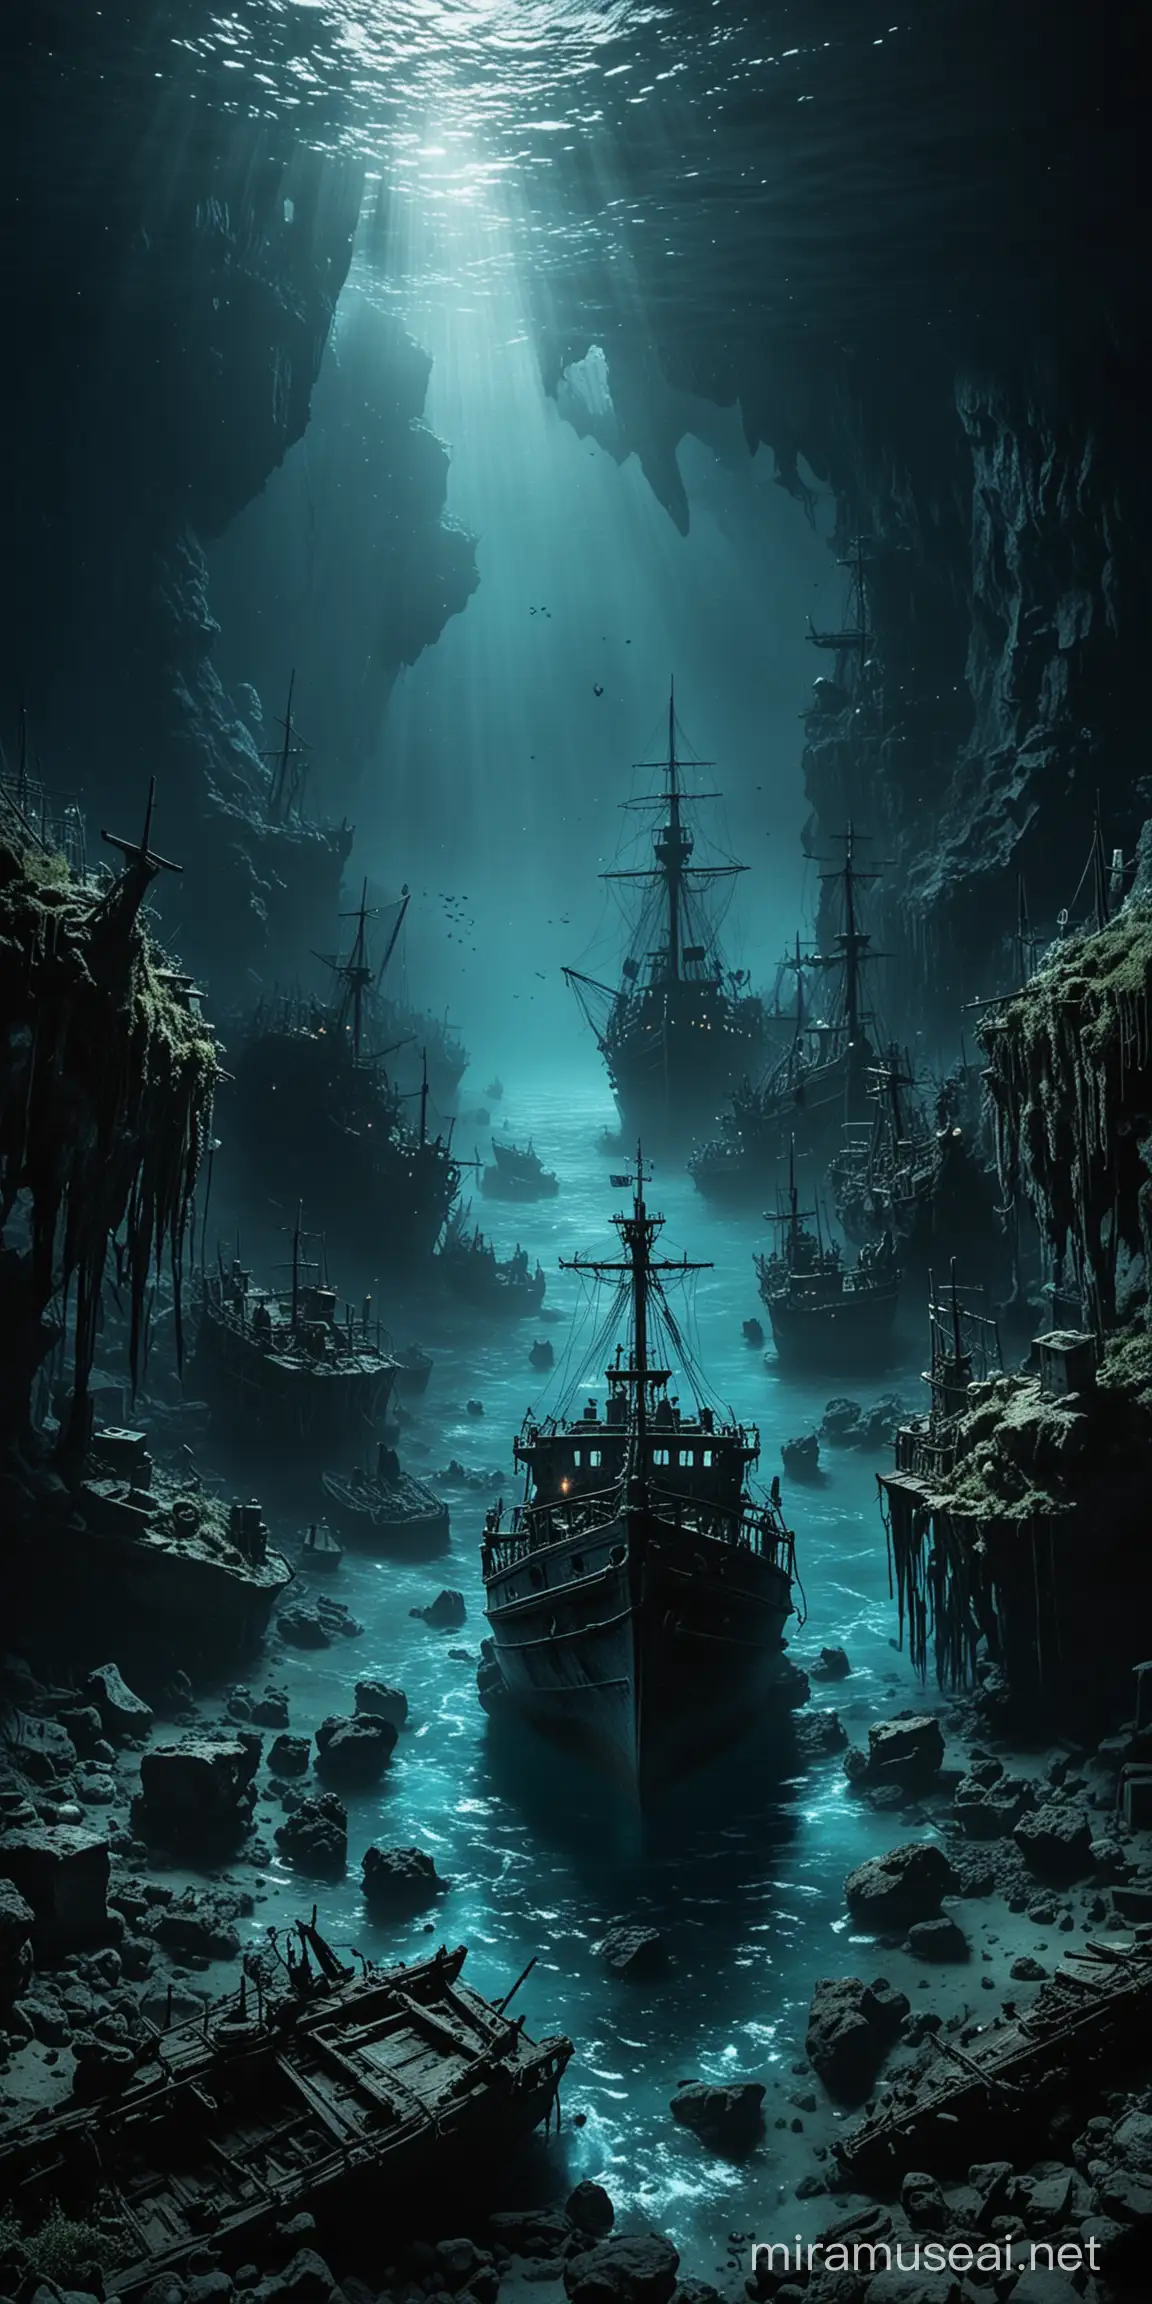 містичне кладовище кораблів в глибинах темного синього моря